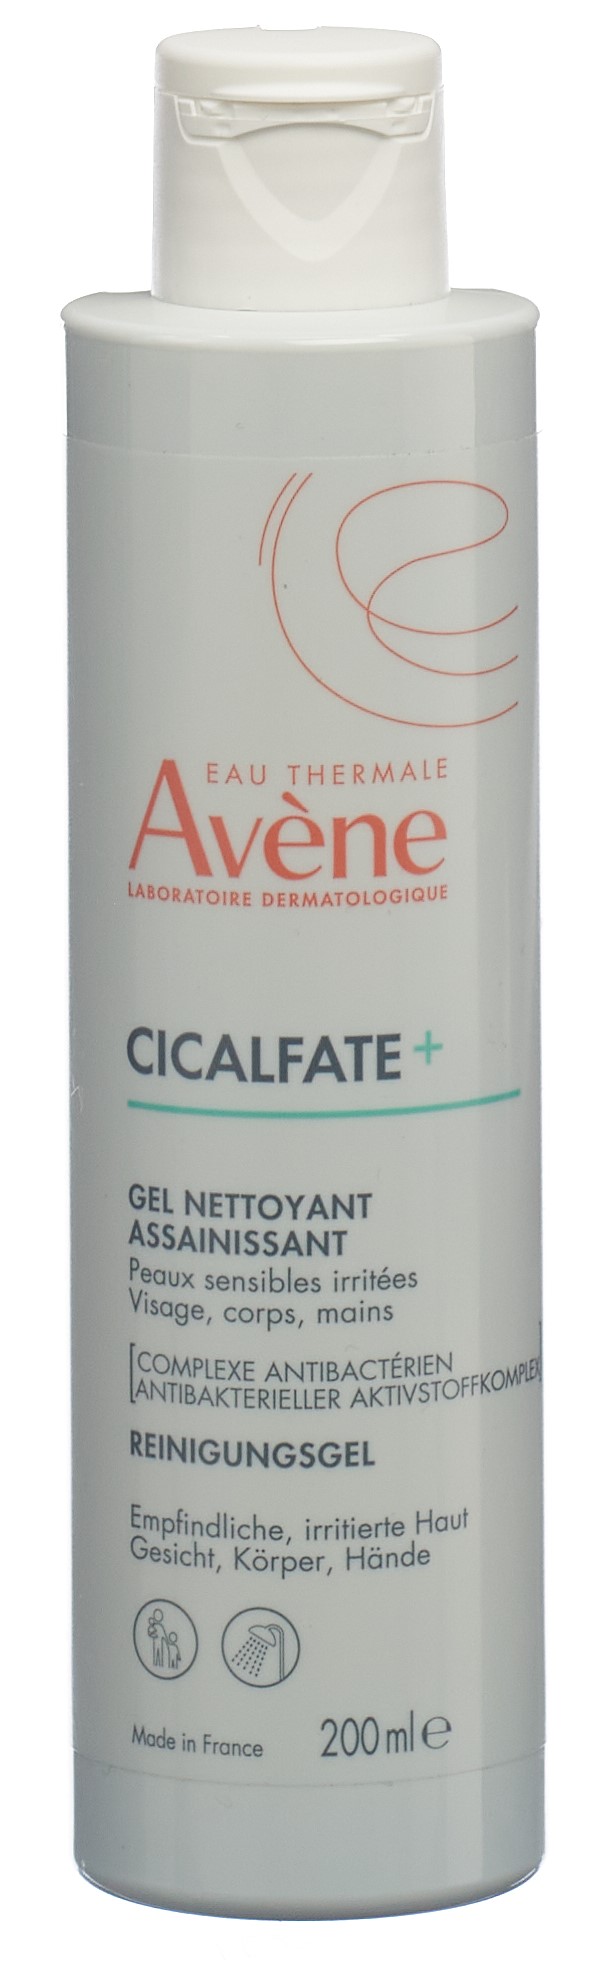 AVENE Cicalfate+ Reinigungsgel Fl 200 ml